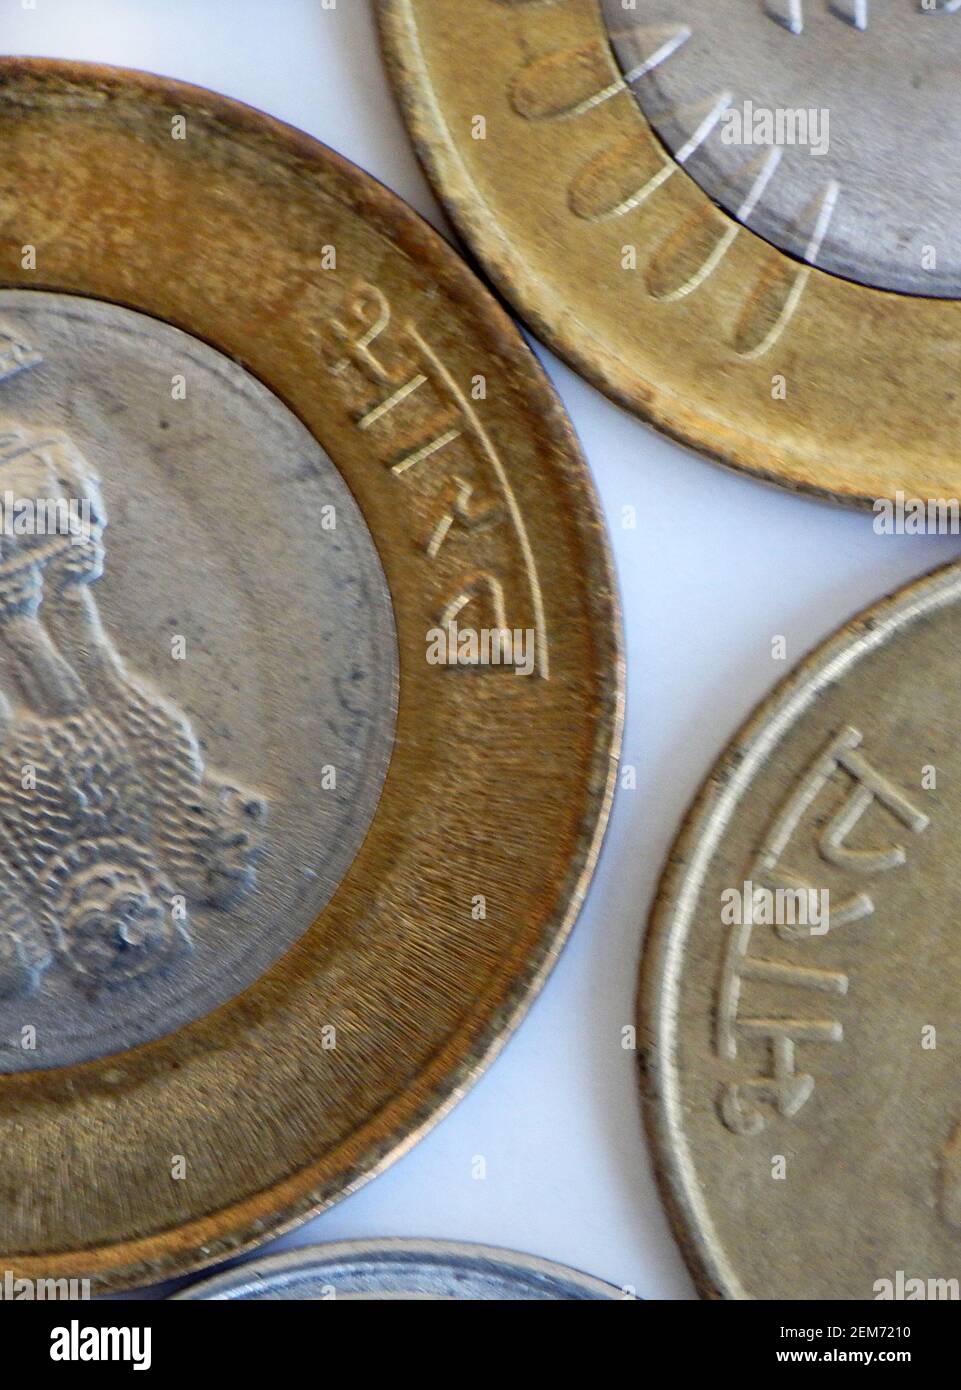 Vue rapprochée des pièces de monnaie indienne avec symbole trois lions Et le mot de l'inde dans le laguage national hindi Banque D'Images